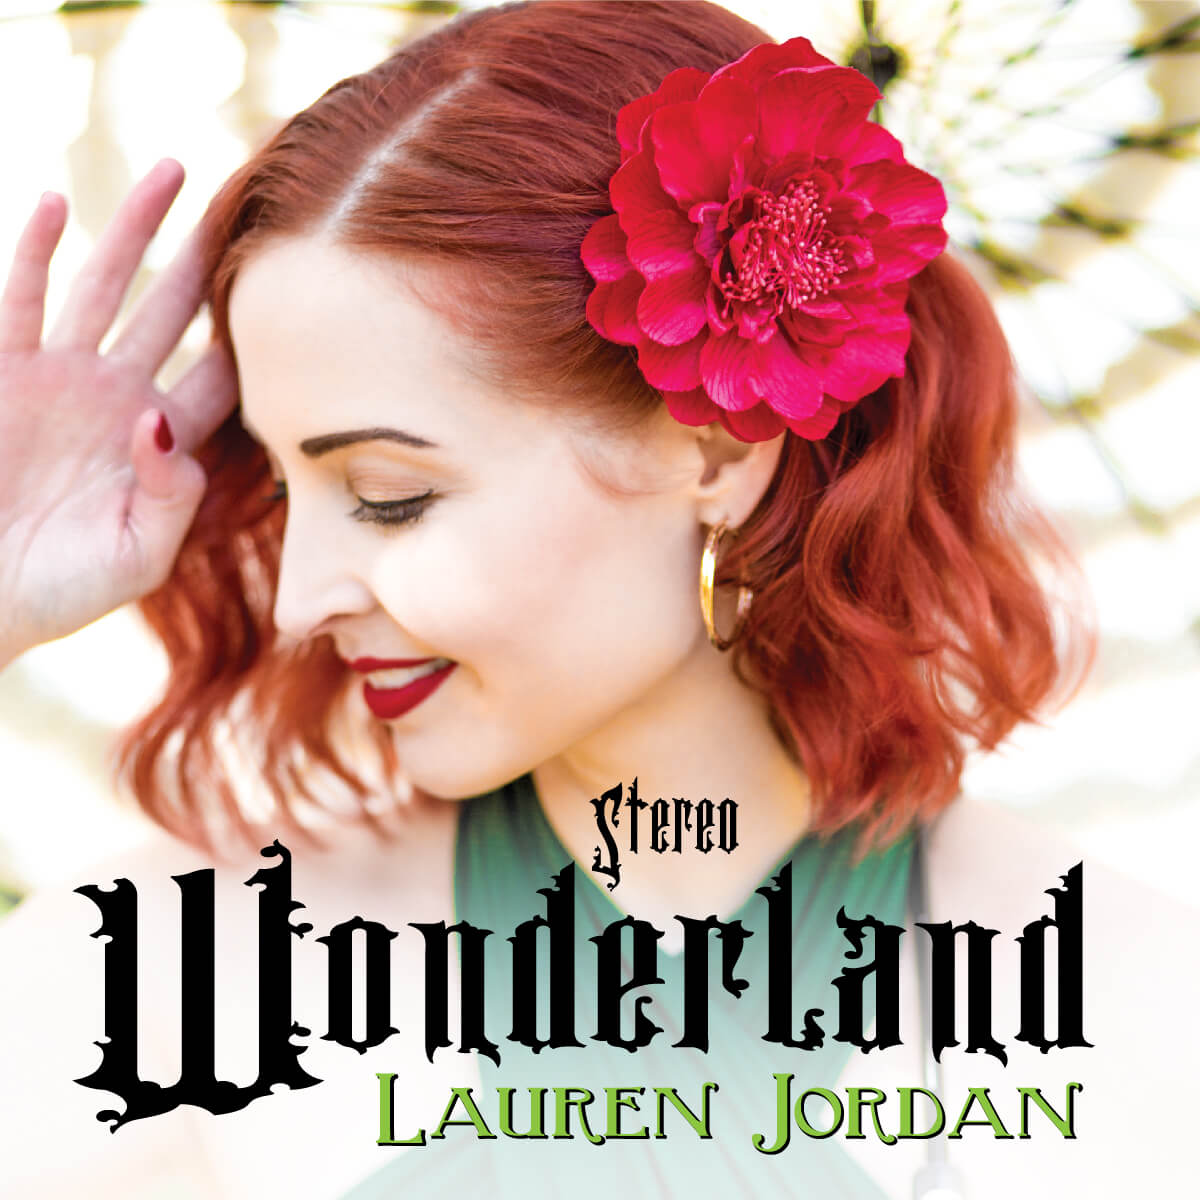 Lauren Jordan - Stereo Wonderland - Cover - Front